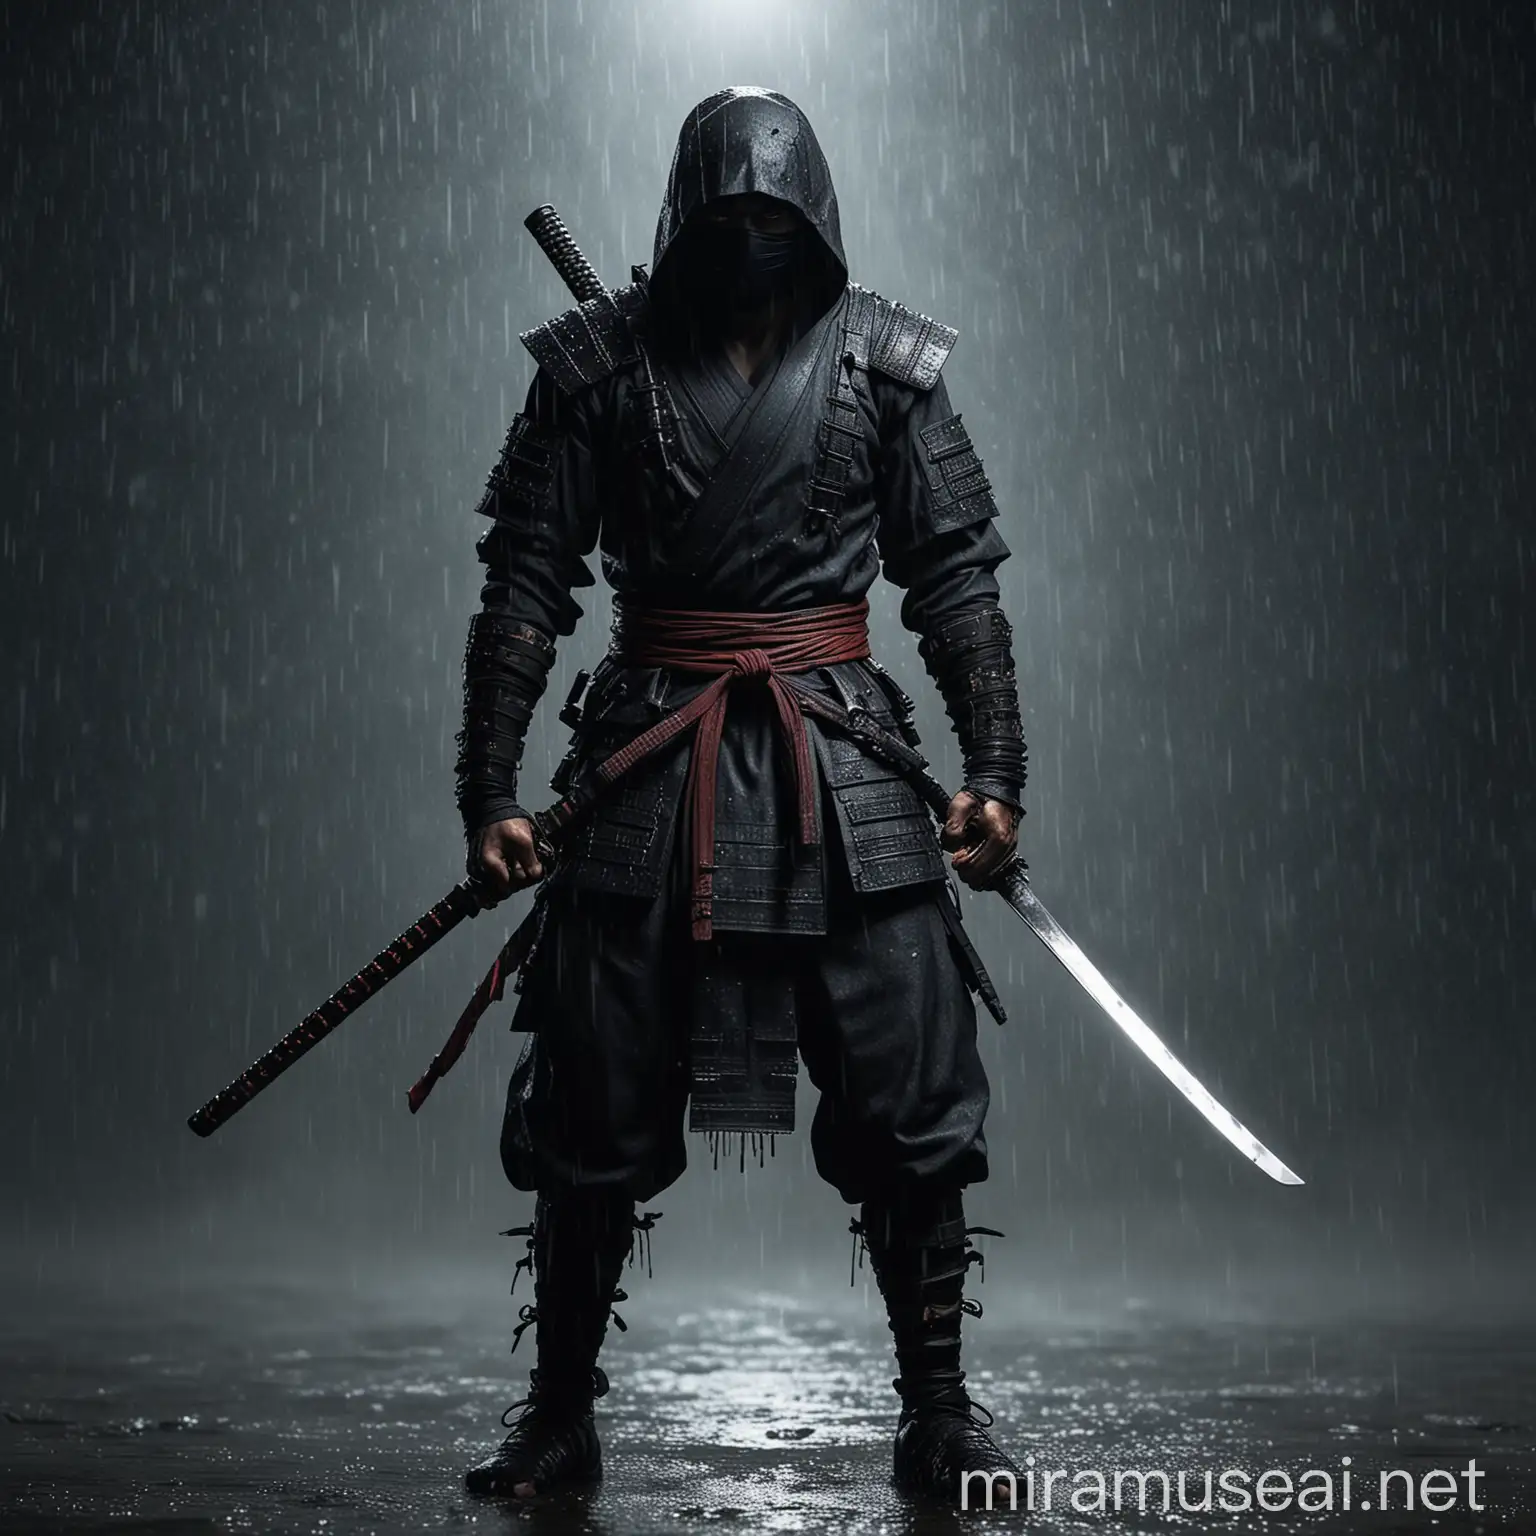 Fearsome Ninja Warrior with Katana Sword in Rainy Night